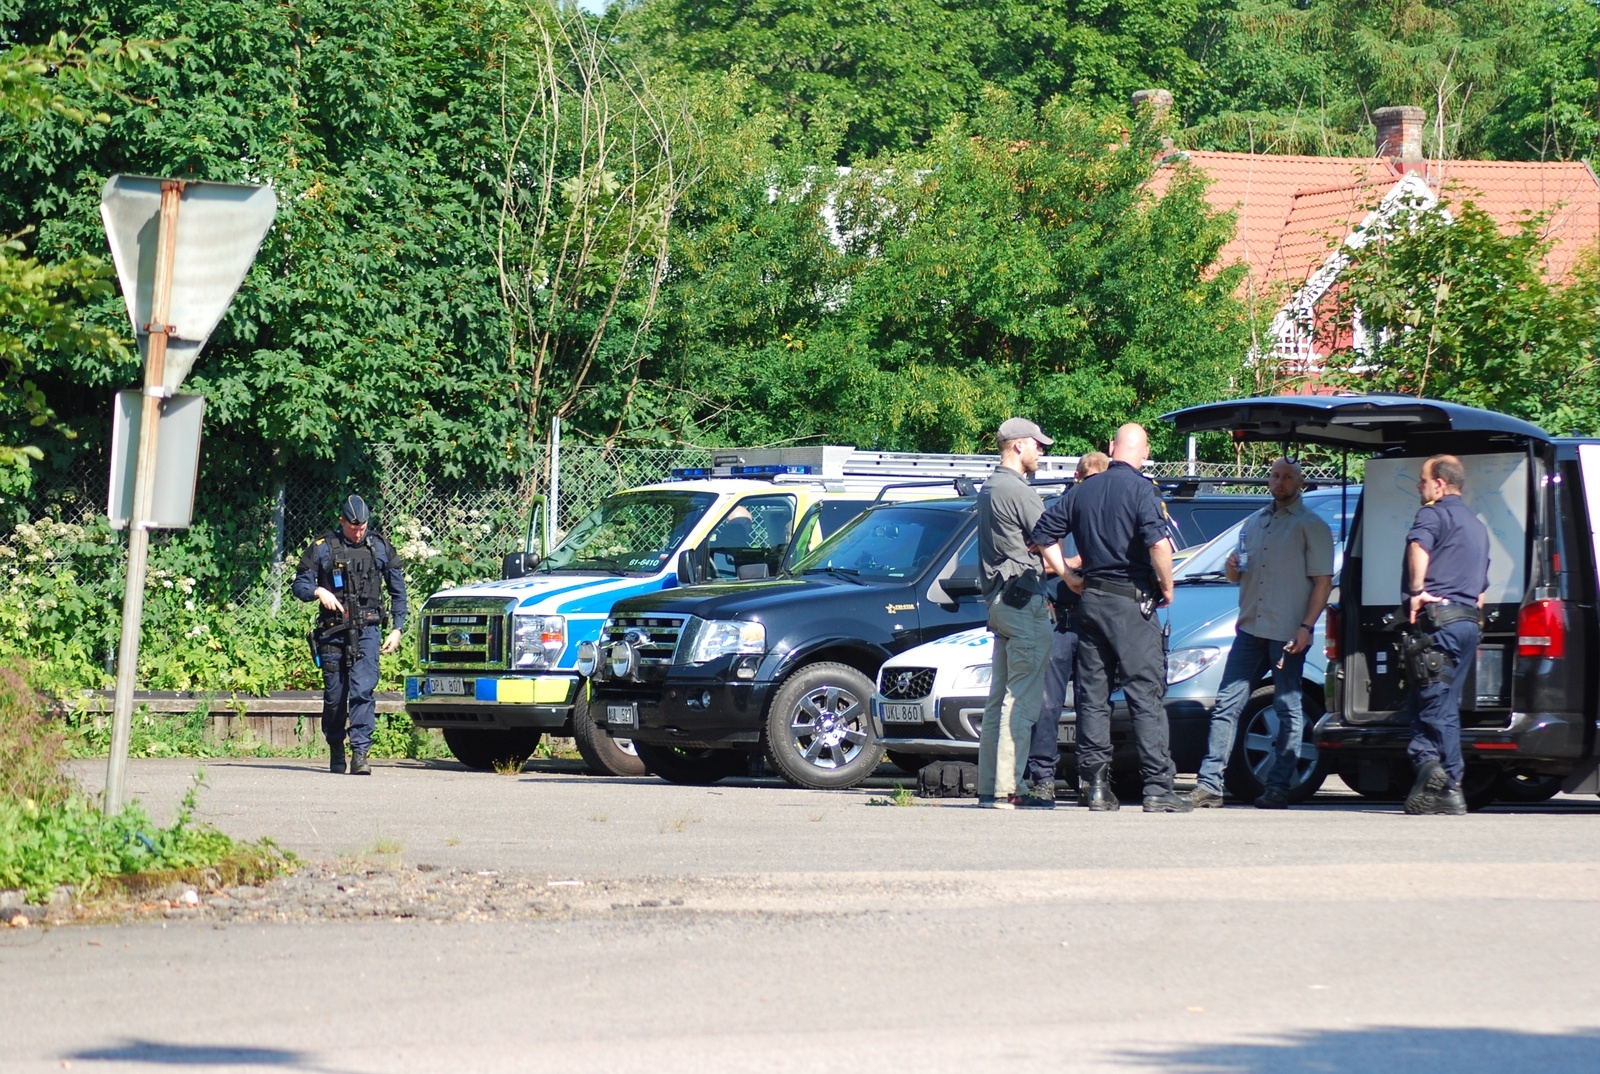 Polisinsatsen pågår i Hästveda.